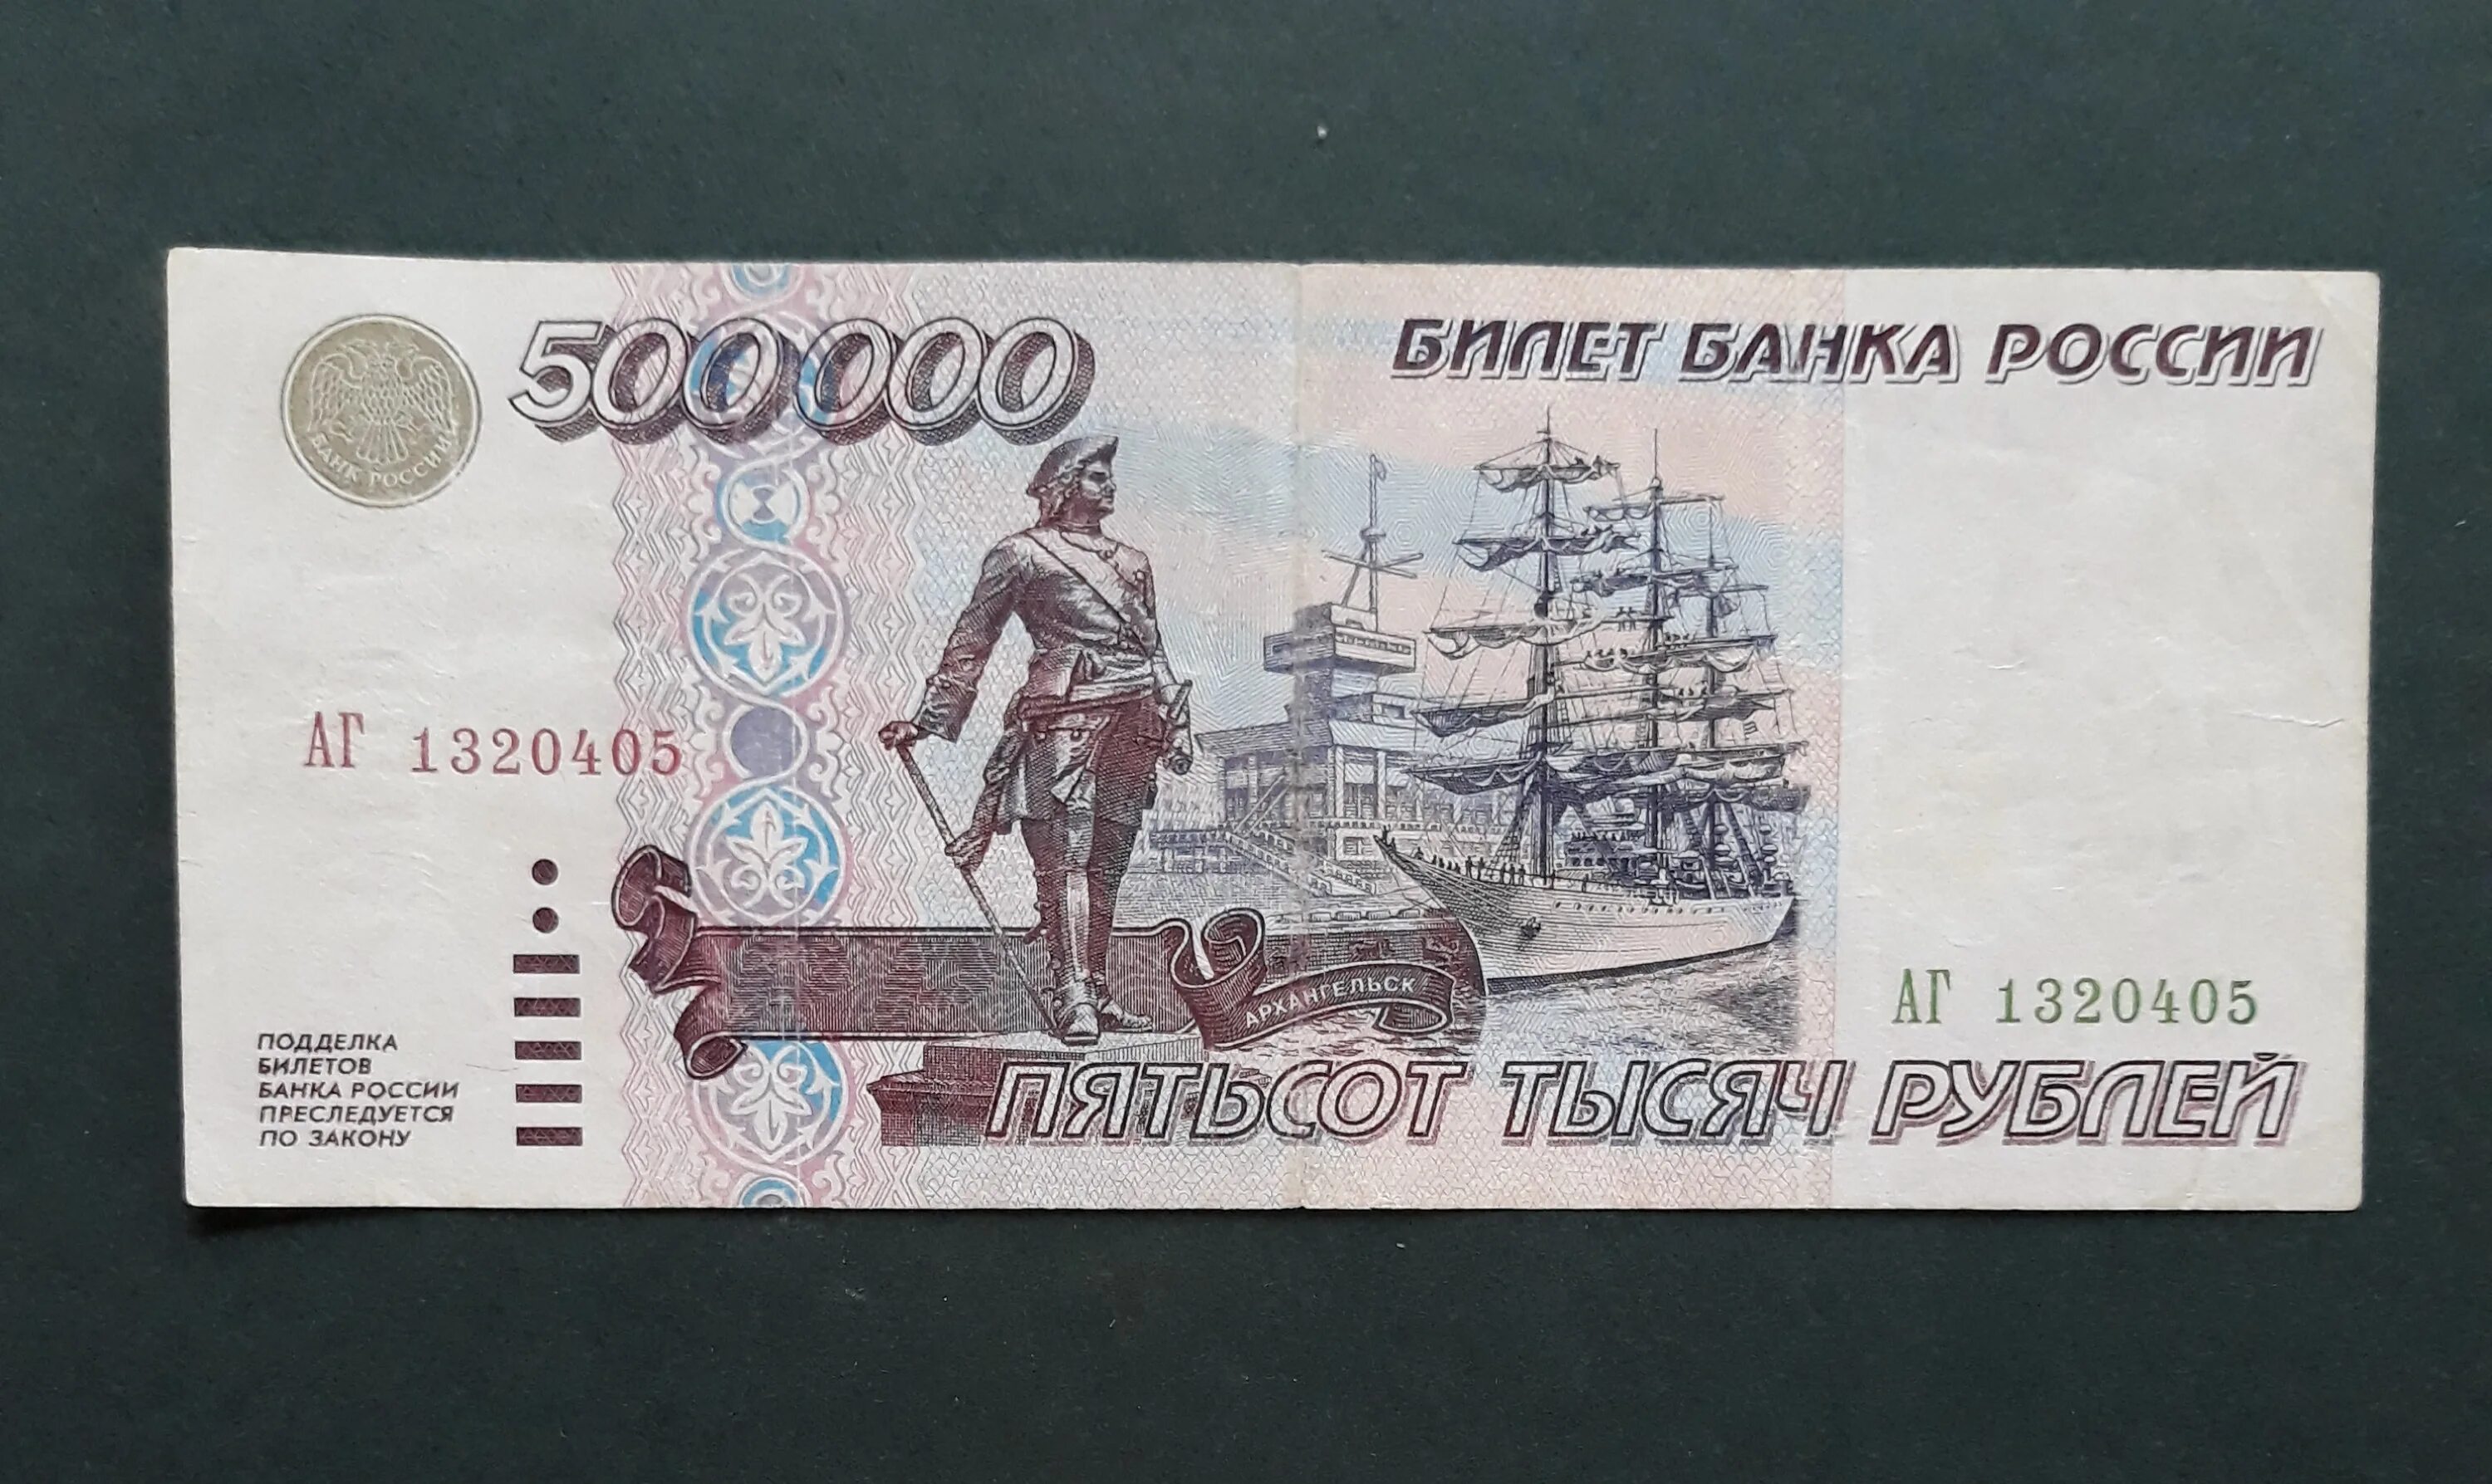 5 15 46. 500000 Рублей. Купюра 500000 рублей. 500000 Рублей 1995 года. 500 Рублей 1995 года.